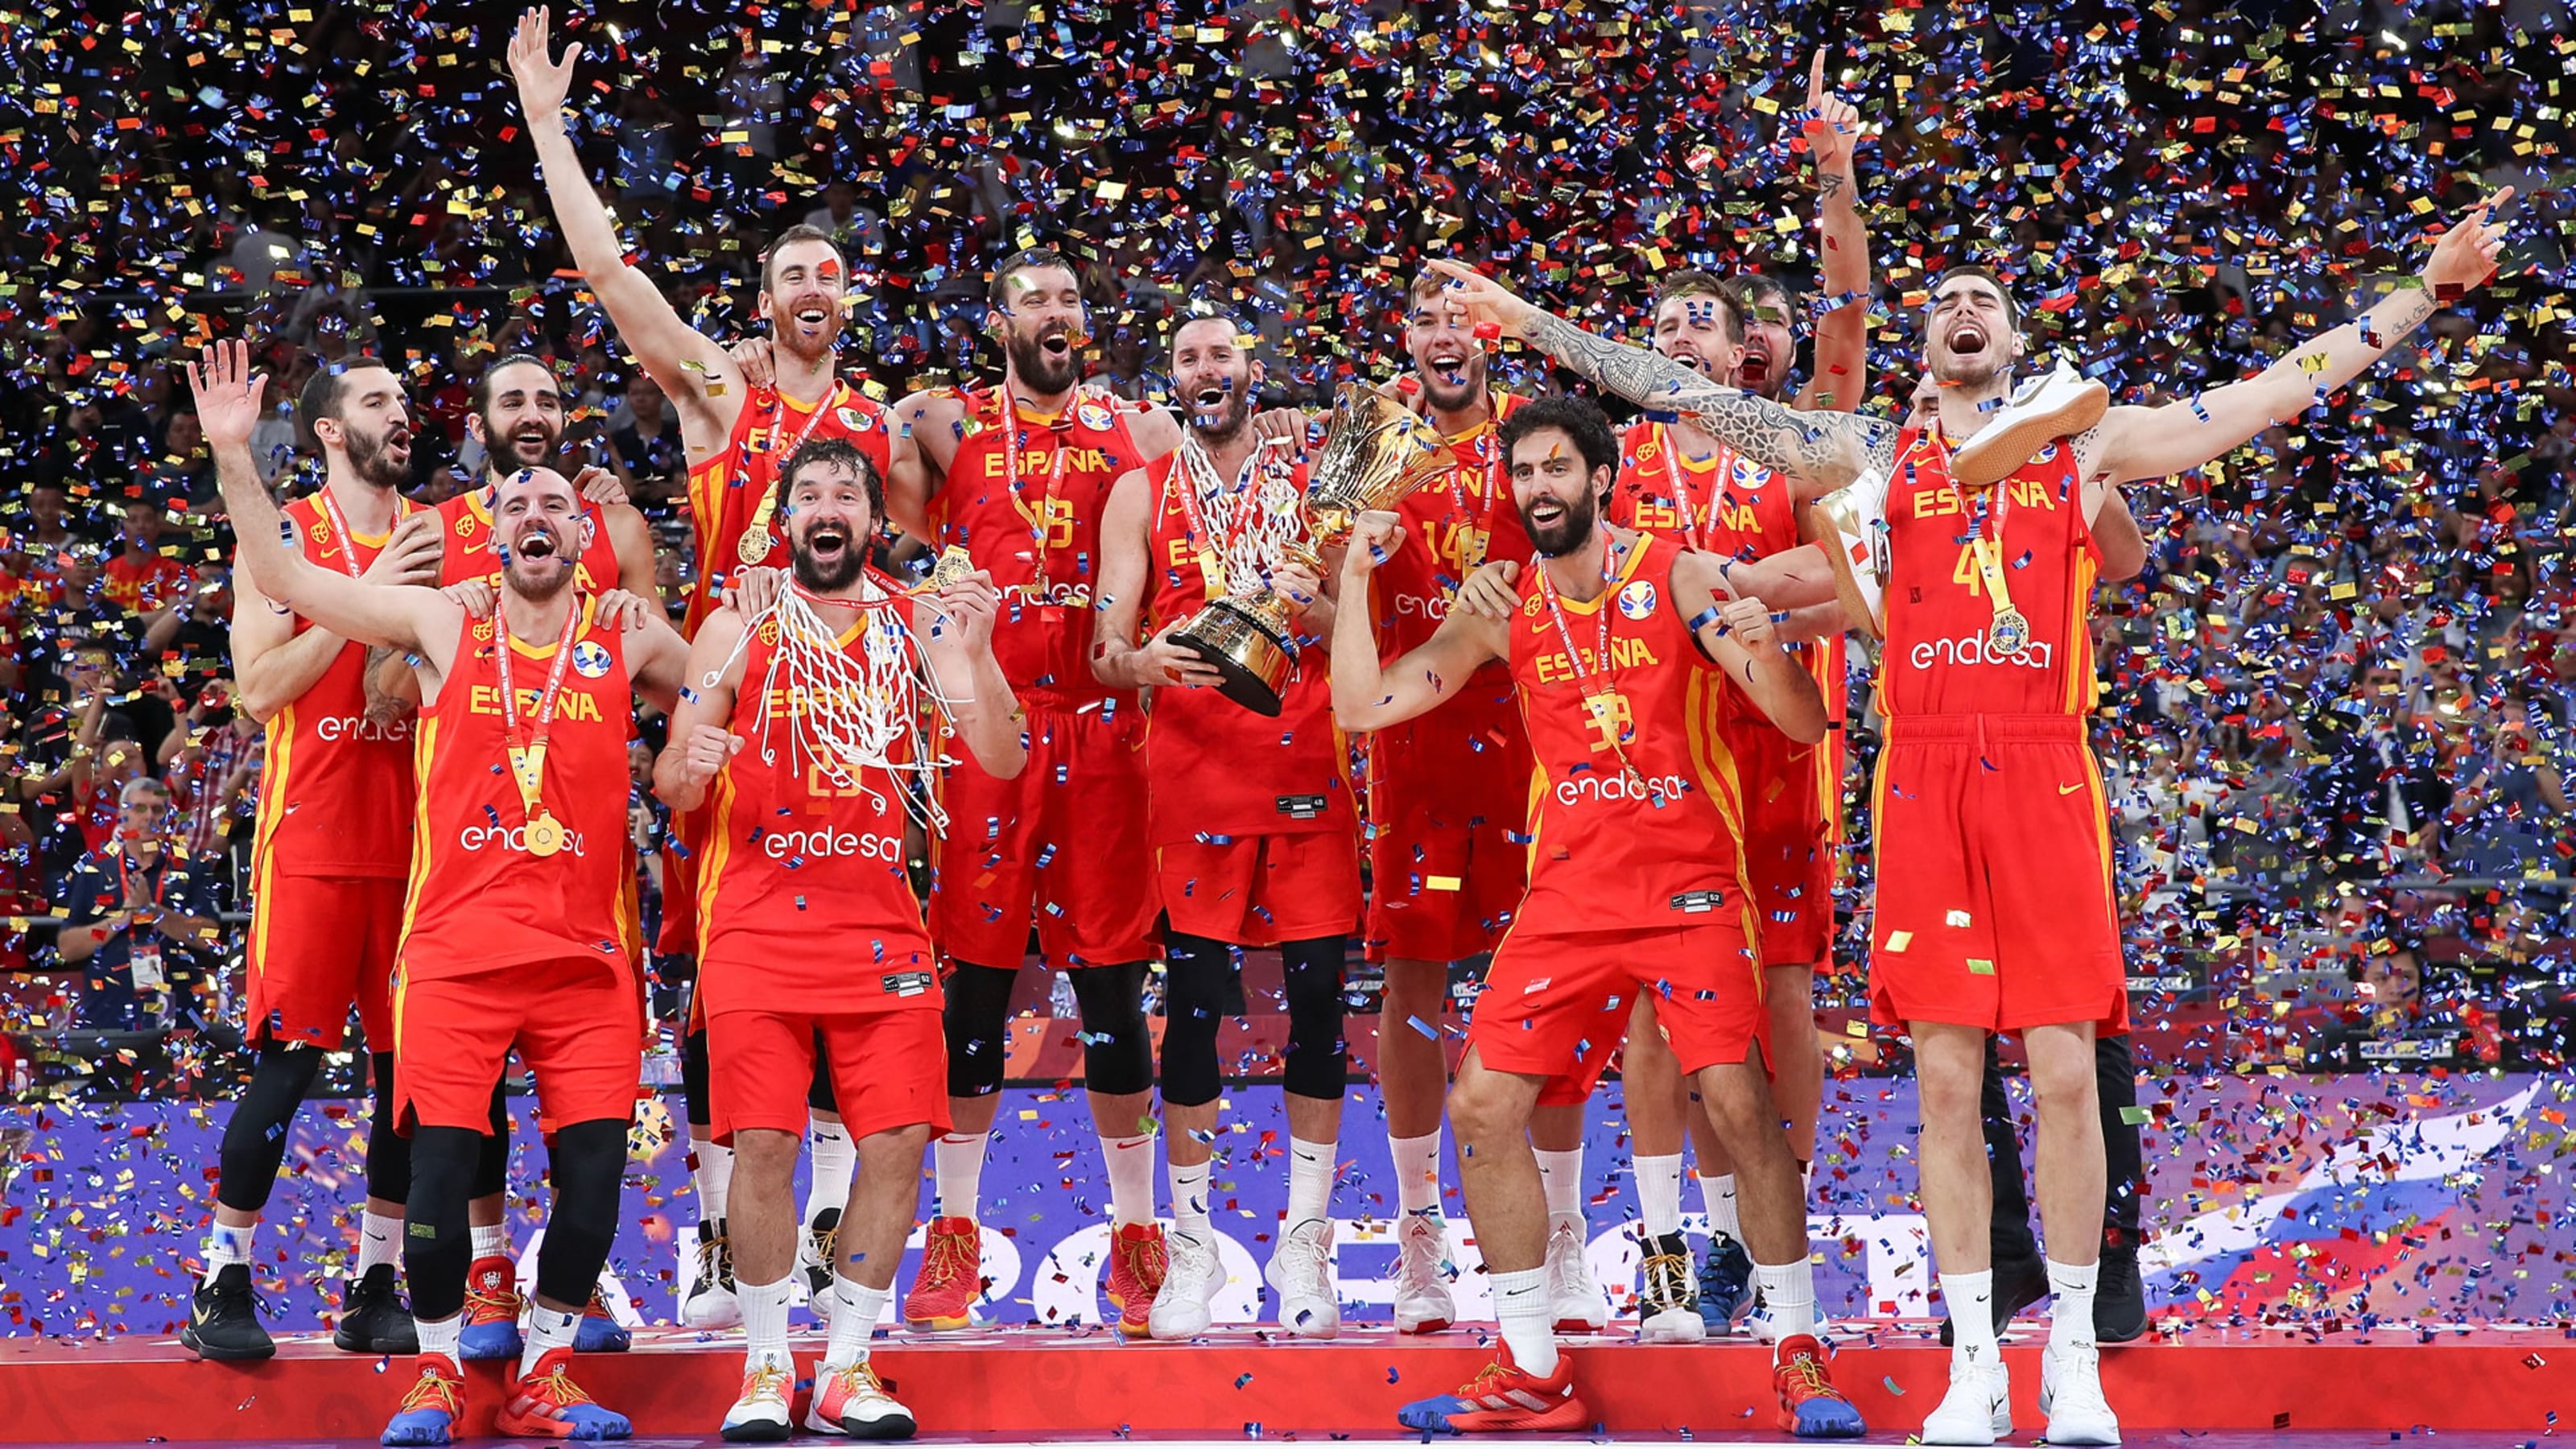 男子世界ランク更新 1位は米国もスペインが猛追 日本38位に上昇 バスケットボール